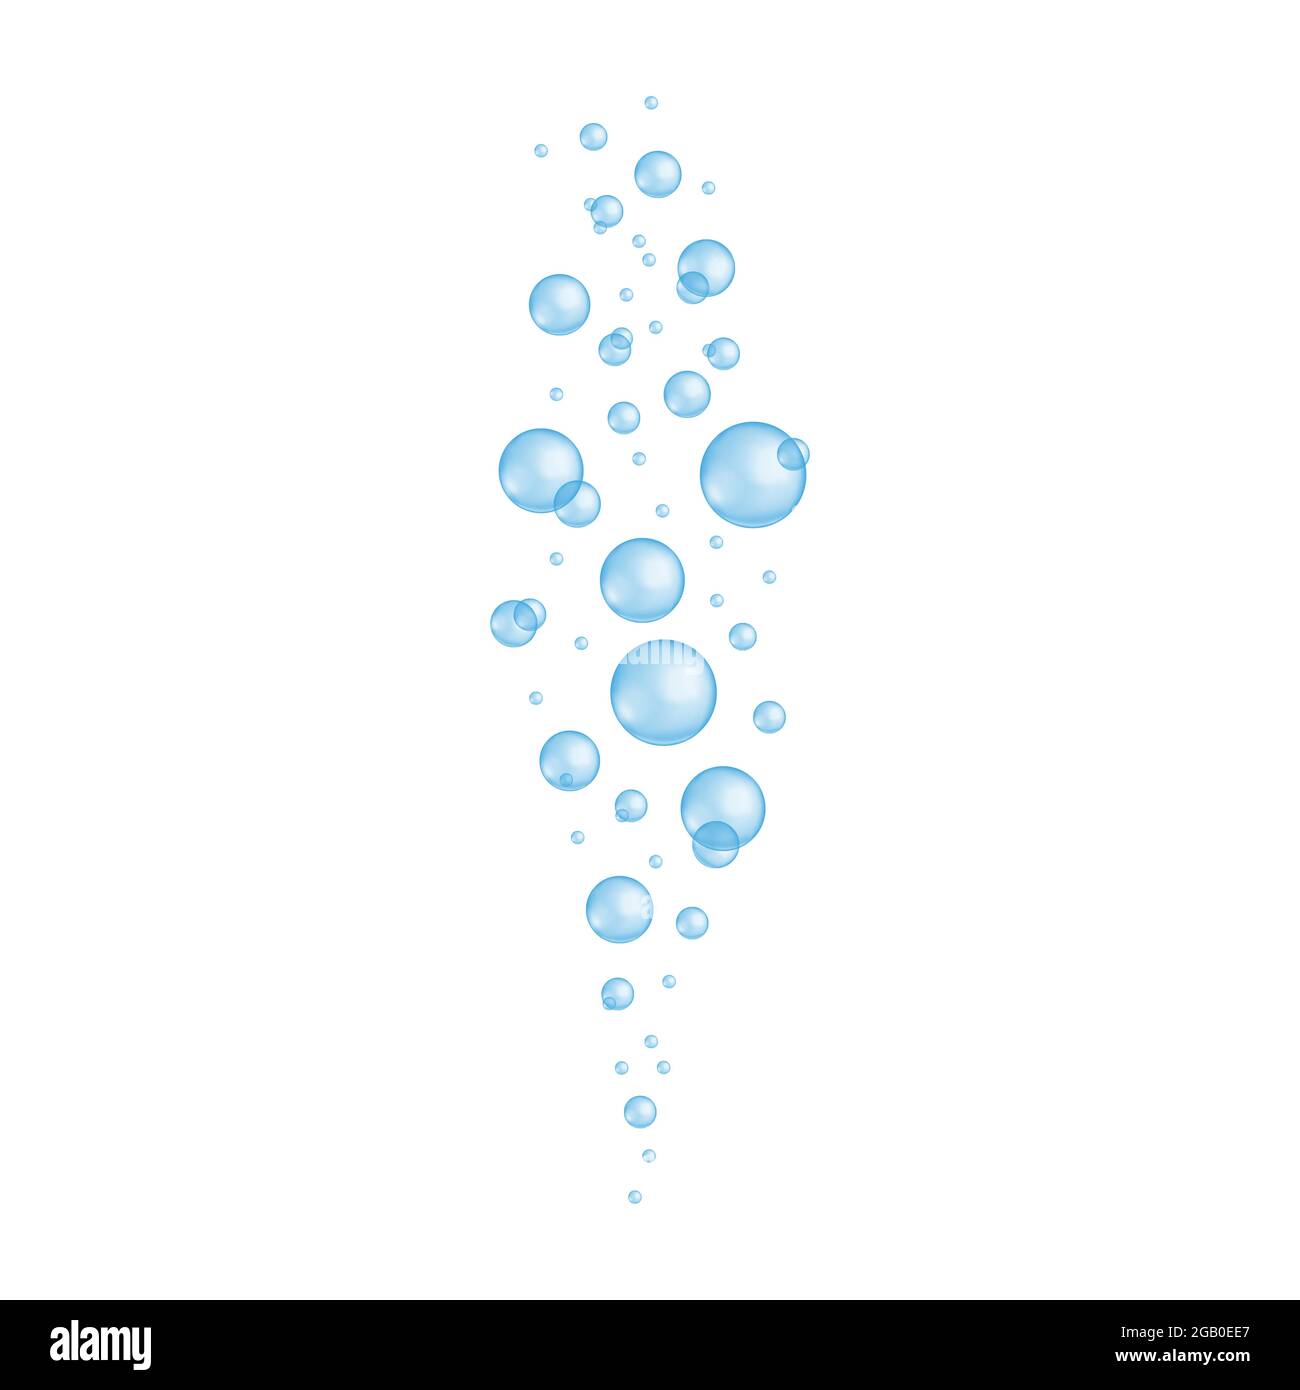 Unterwasserblasen. Blau transparente Tropfen Bad sud, Seife oder Shampoo-Schaum, Aquarium oder Meerwasser Strom, Sekt. Vektor-realistische Darstellung. Stock Vektor